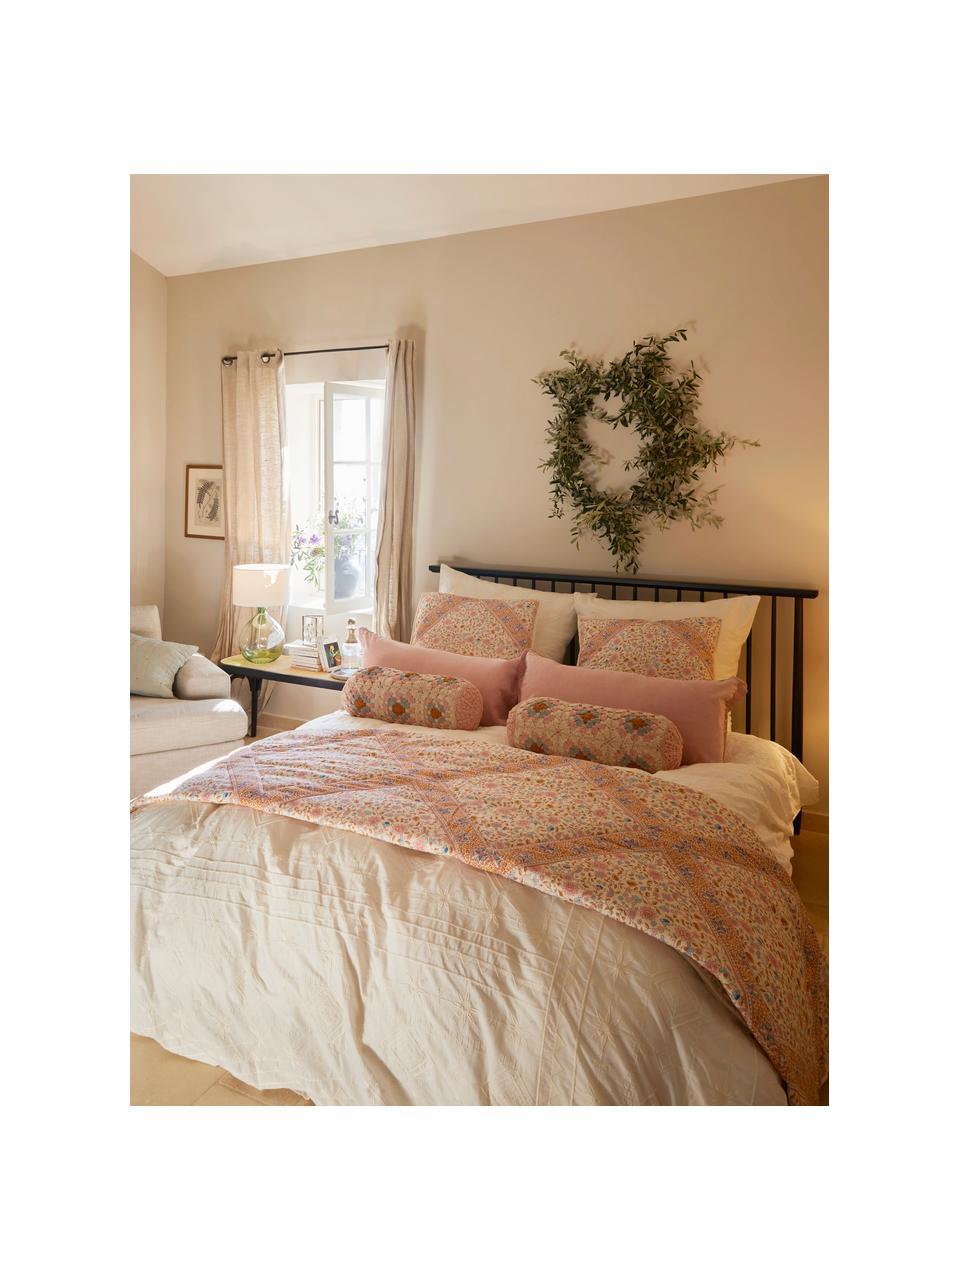 Wattierte Tagesdecke Lilou mit Paisley-Muster, Bezug: 100% Baumwolle, Hellbeige, Mehrfarbig, B 260 x L 260 cm (für Betten bis 200 x 200 cm)